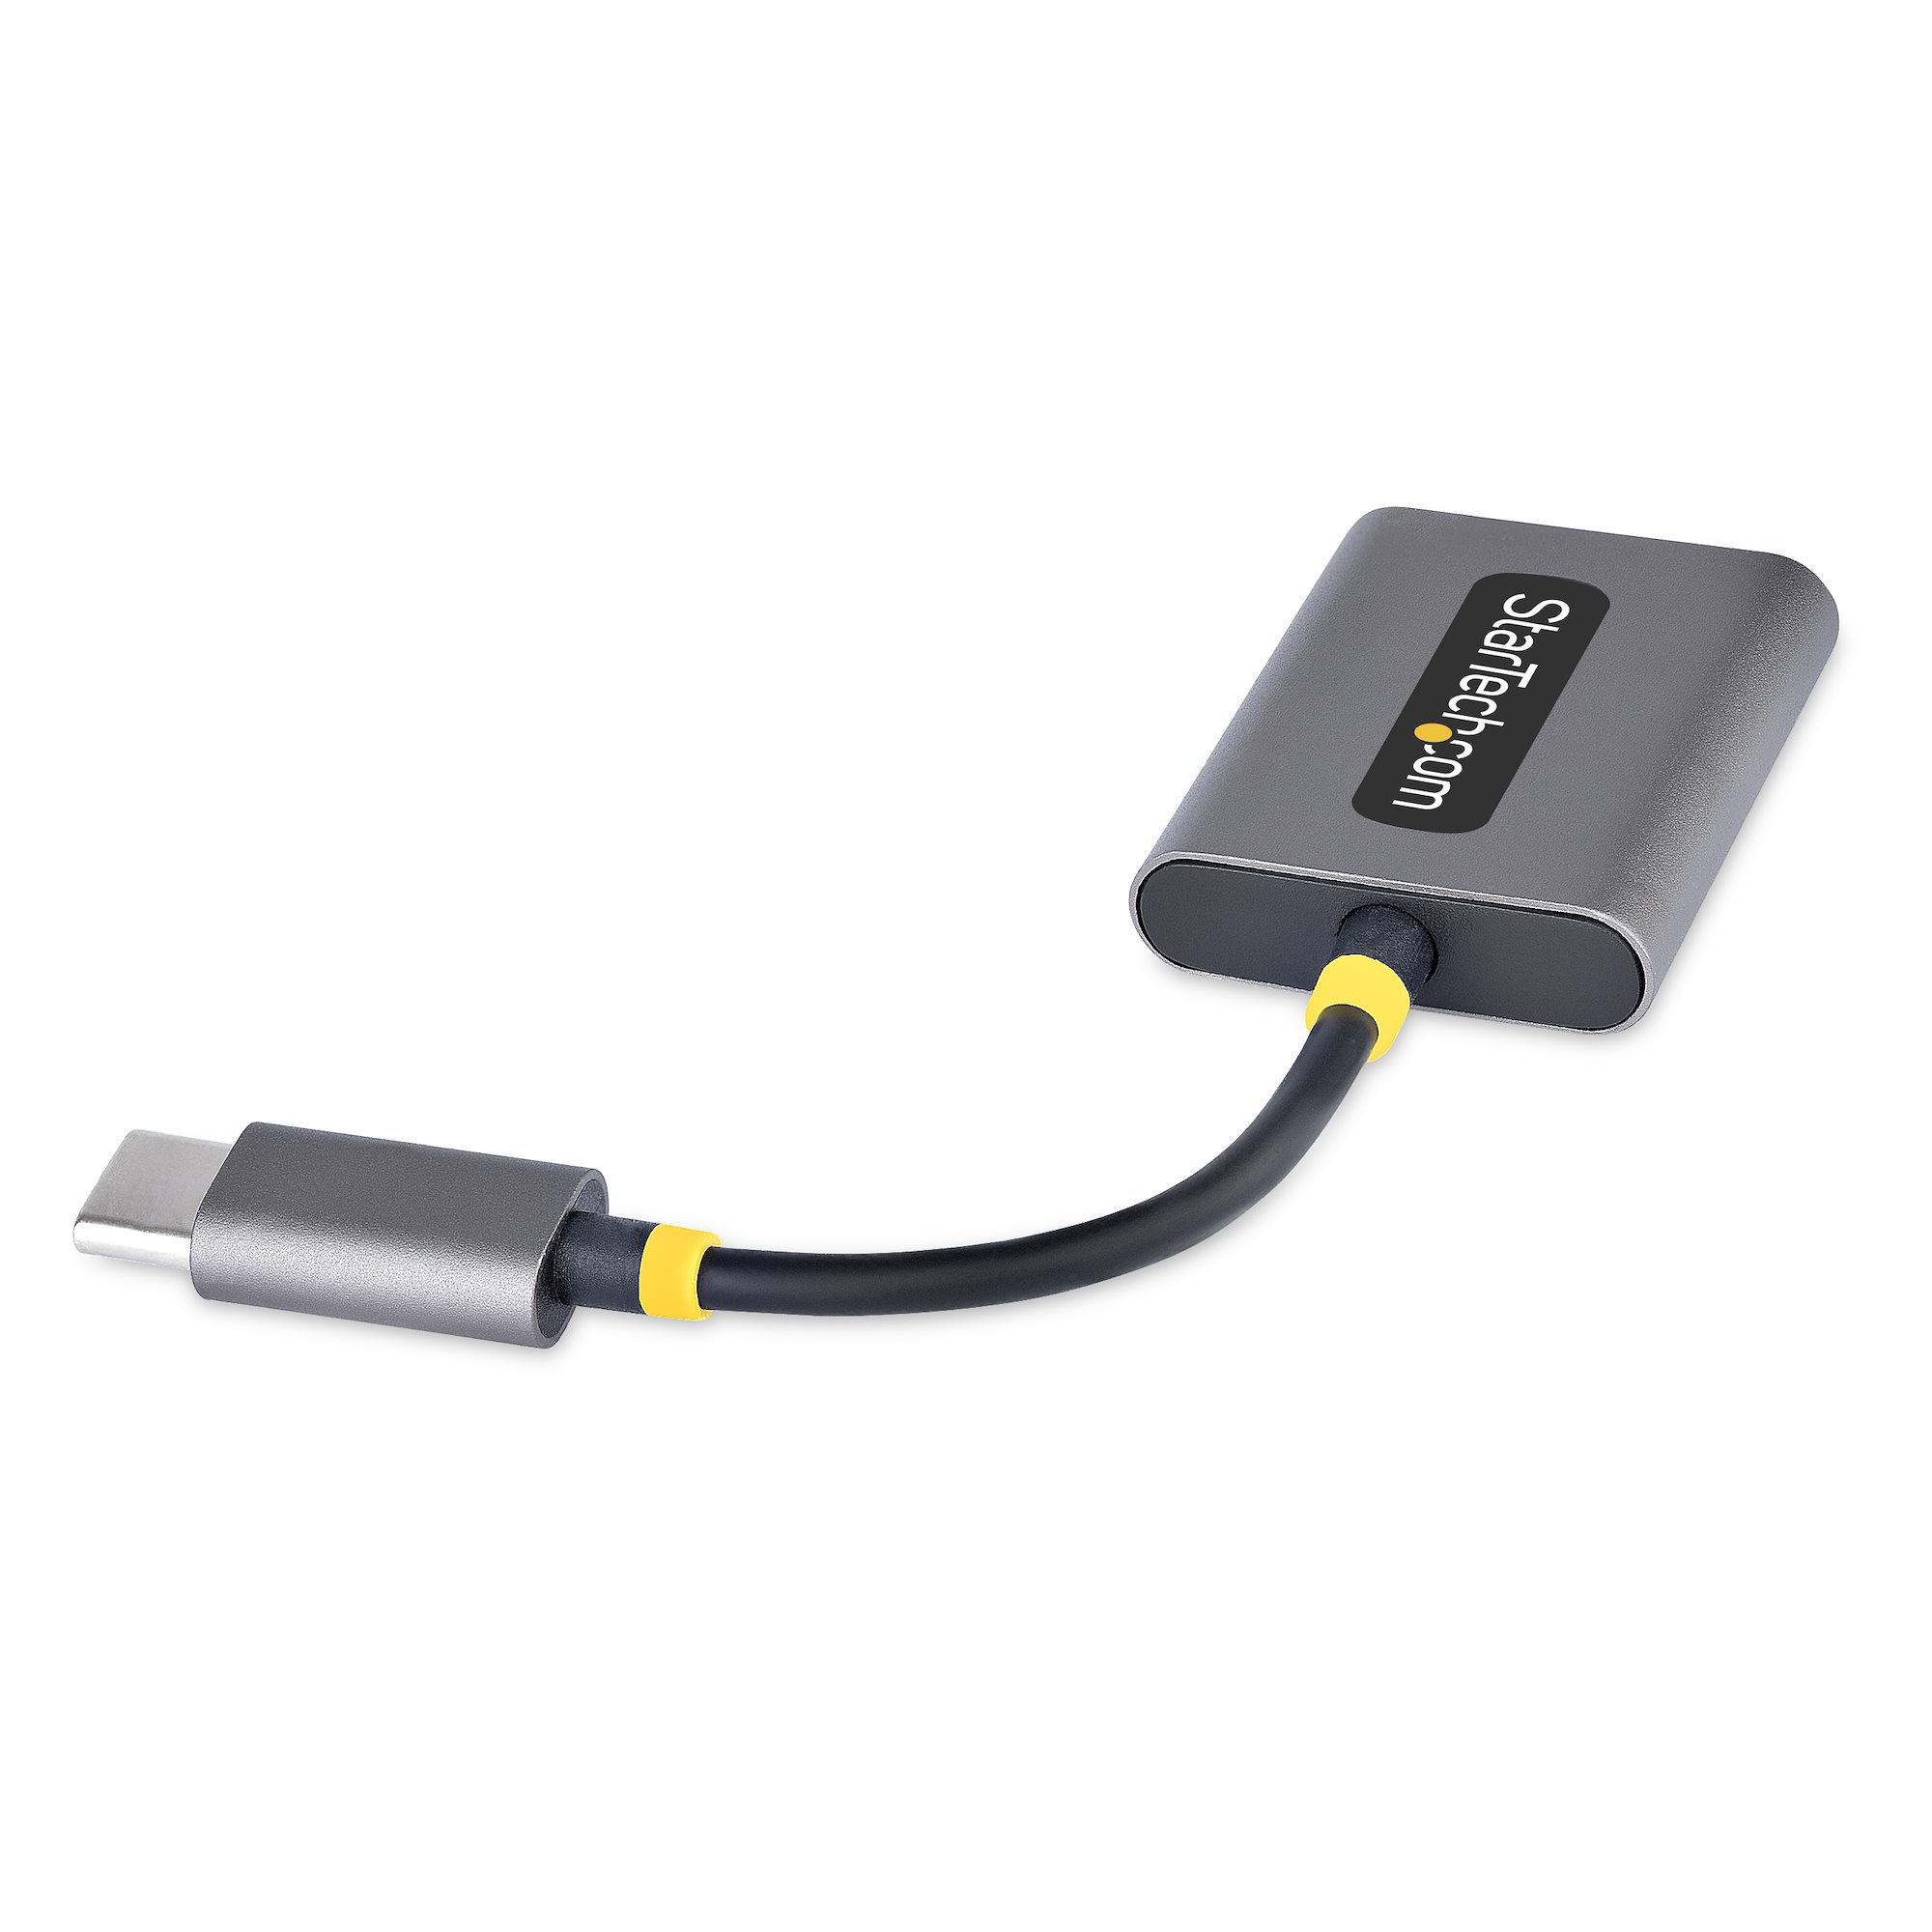 Adaptateur USB-C Audio & Chargeur - Convertisseur Prise Audio Mini Jack Aux  TRRS 3.5mm Casque/Écouteurs - 60W USB Type-C Power Delivery Pass-Through 